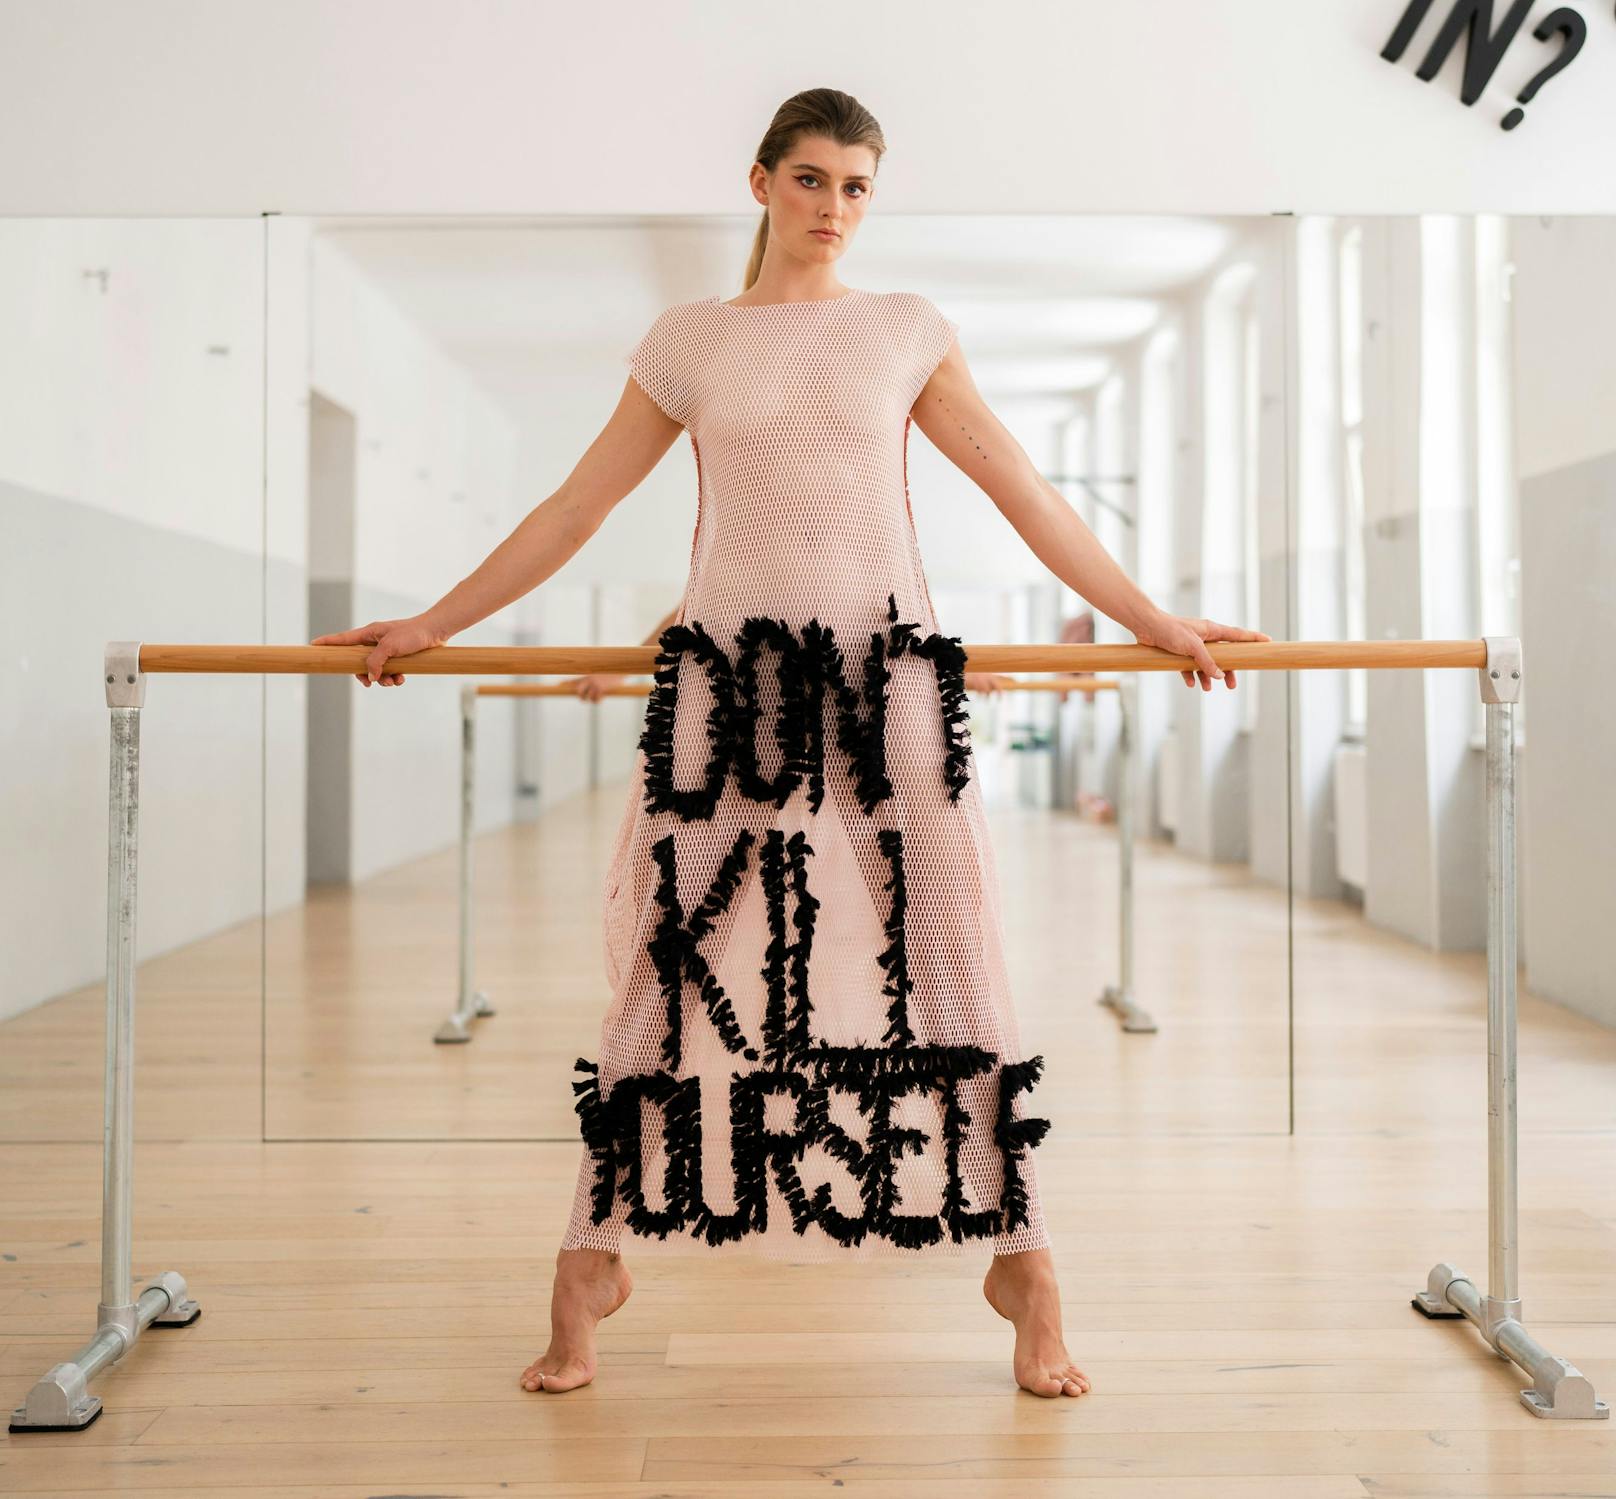 Mit diesem auffallenden Kleid will die Wiener Designerin Marlen Sabetzer-Till auf das Thema Suizid aufmerksam machen.